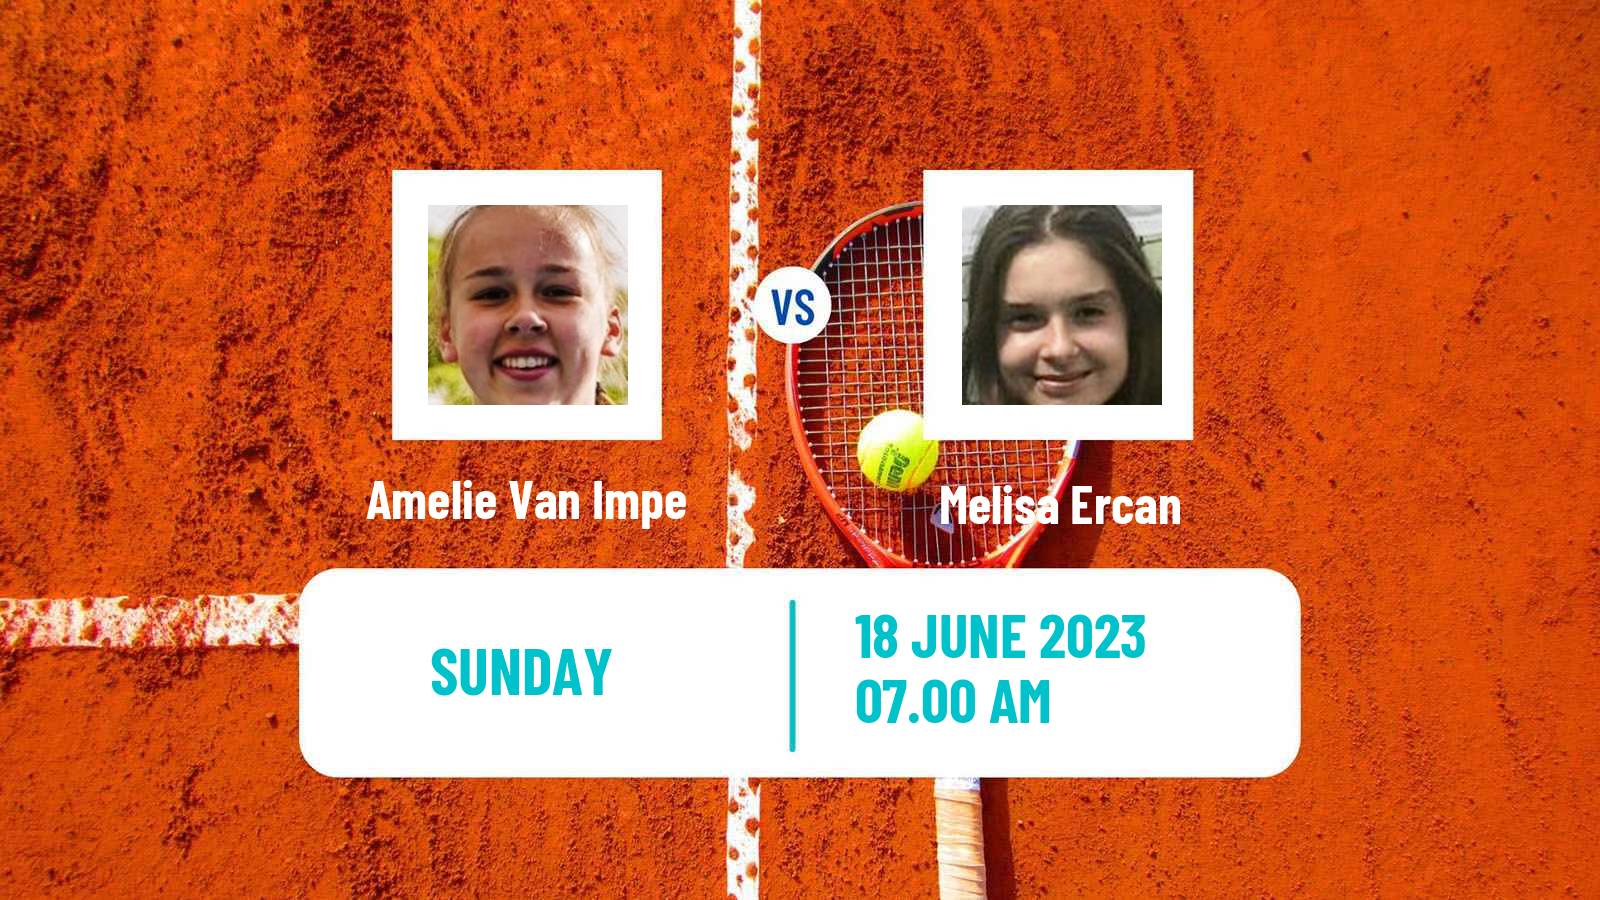 Tennis ITF W15 Norges La Ville Women Amelie Van Impe - Melisa Ercan